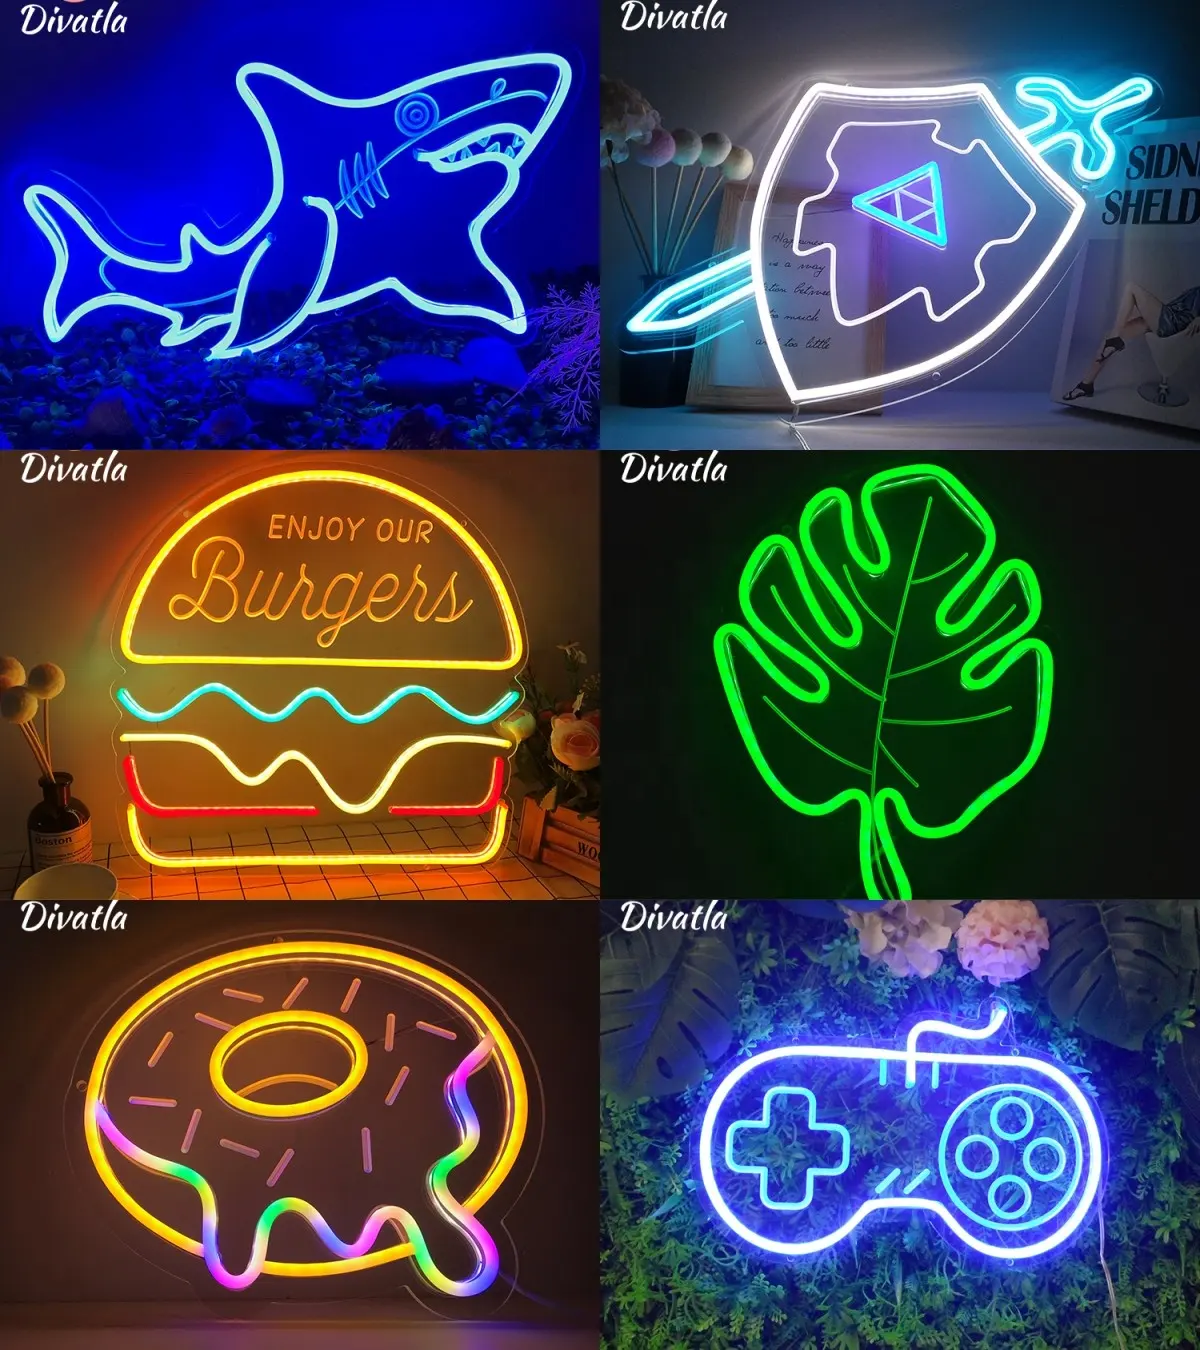 Bán buôn tùy chỉnh đám cưới LED chiếu sáng dấu hiệu Đảng DIY Acrylic Board ánh sáng linh hoạt Led Neon dấu hiệu